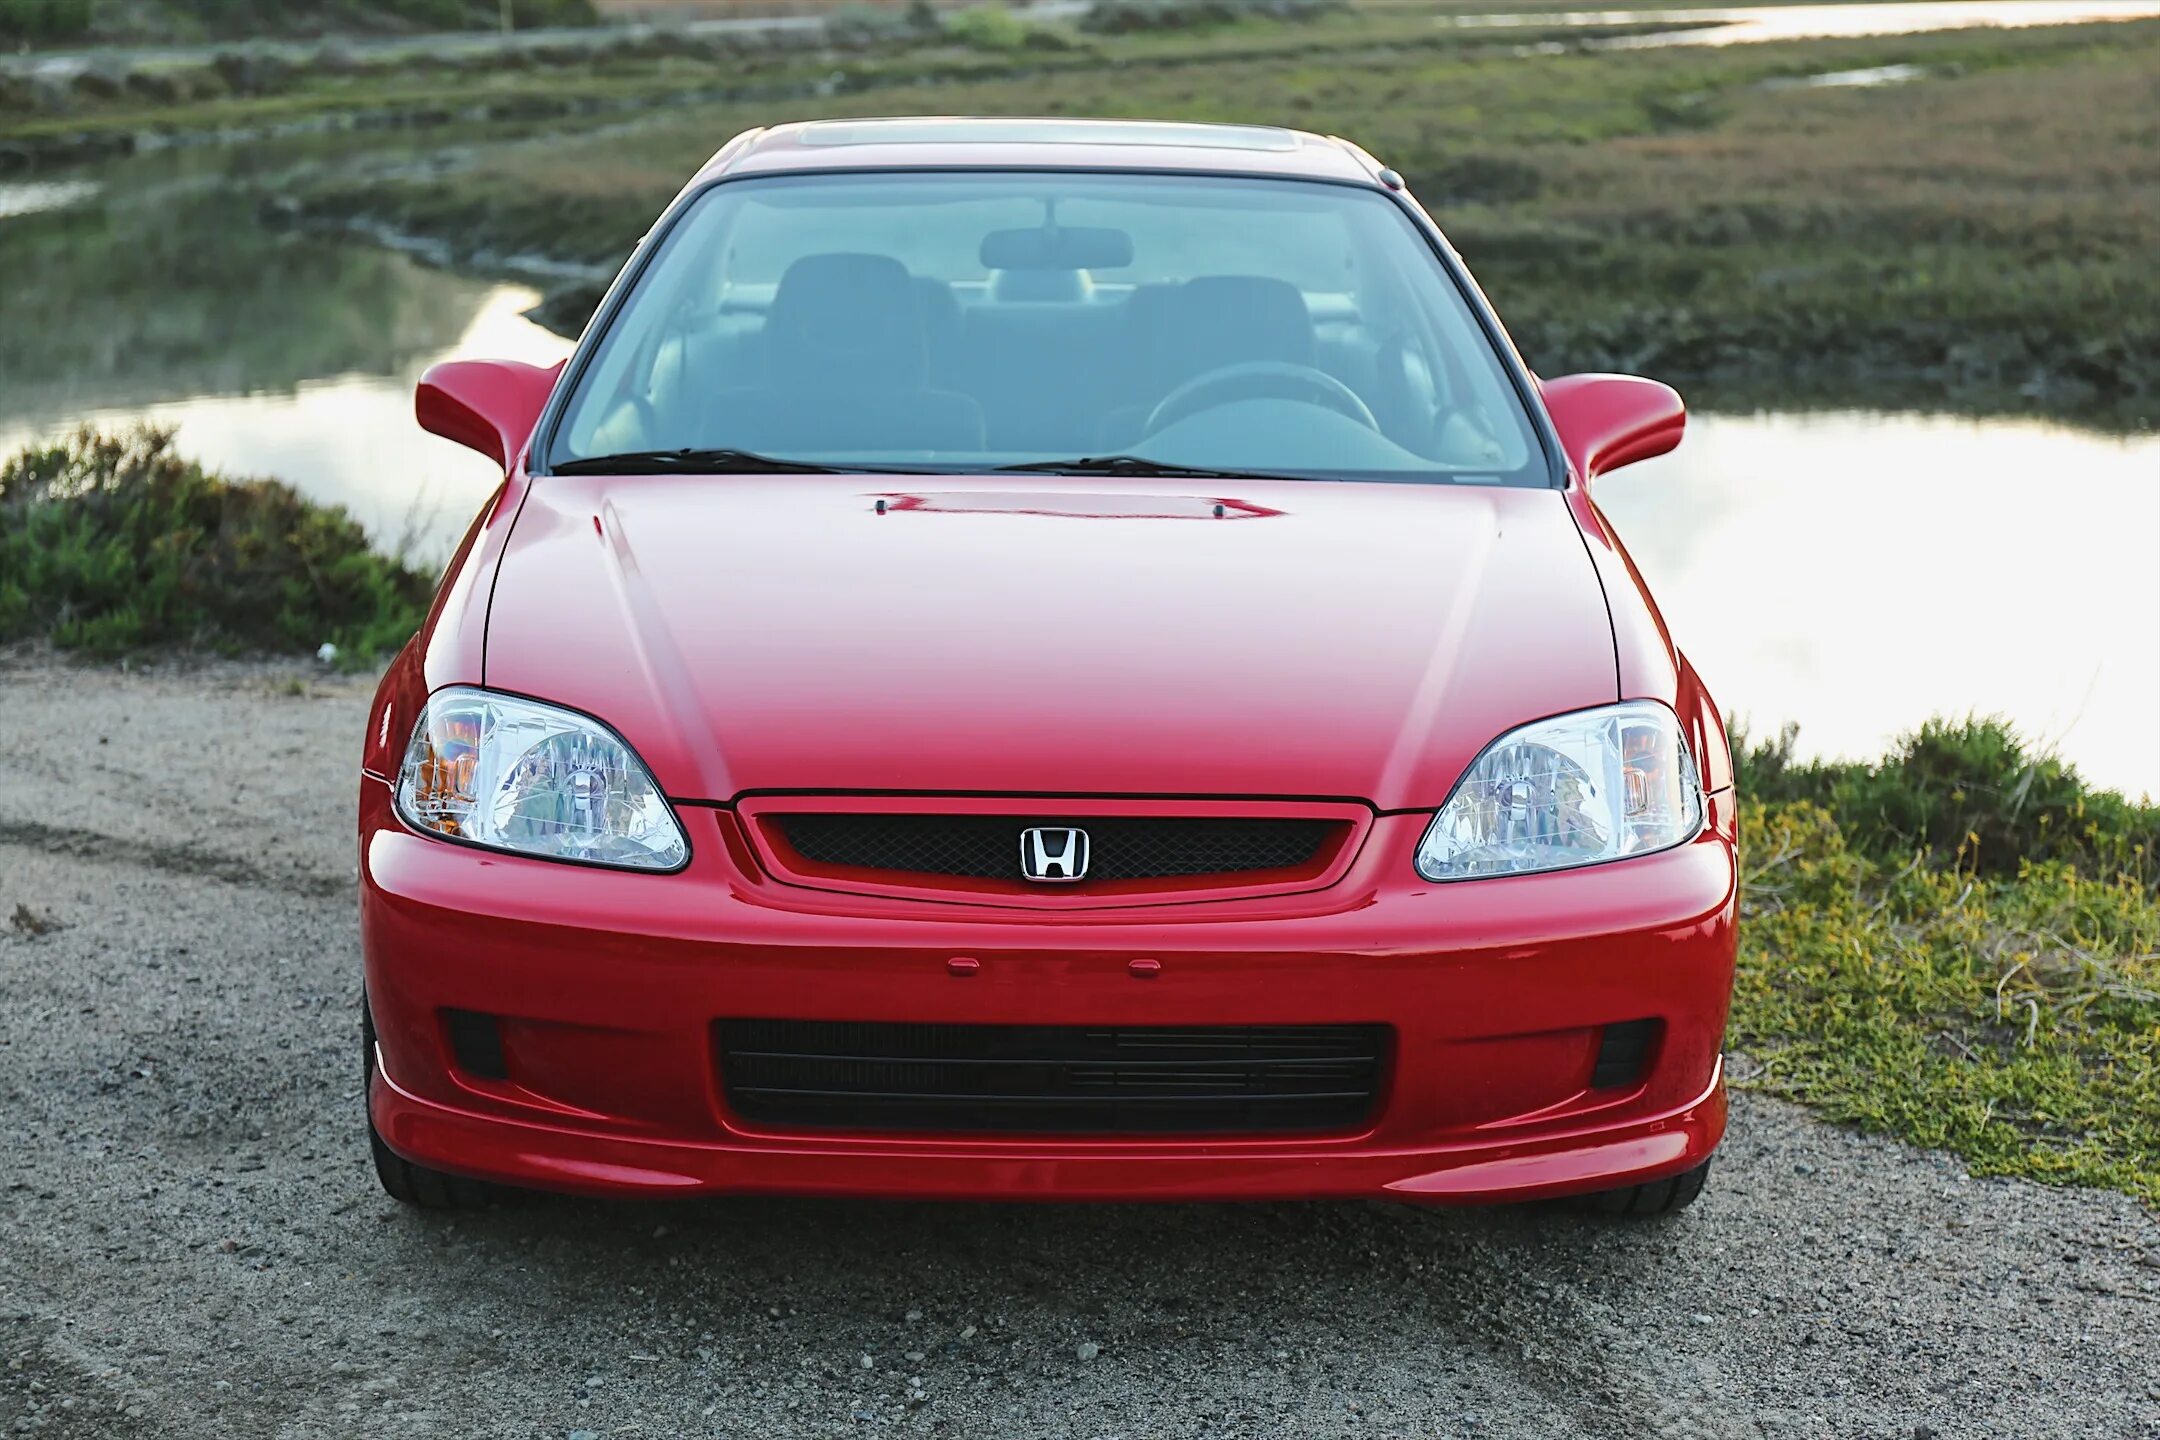 Honda civic 2000 года. Honda Civic 2000. Honda Civic si 2000. Honda Civic 2000 седан. 2000 Honda Civic si (em1).